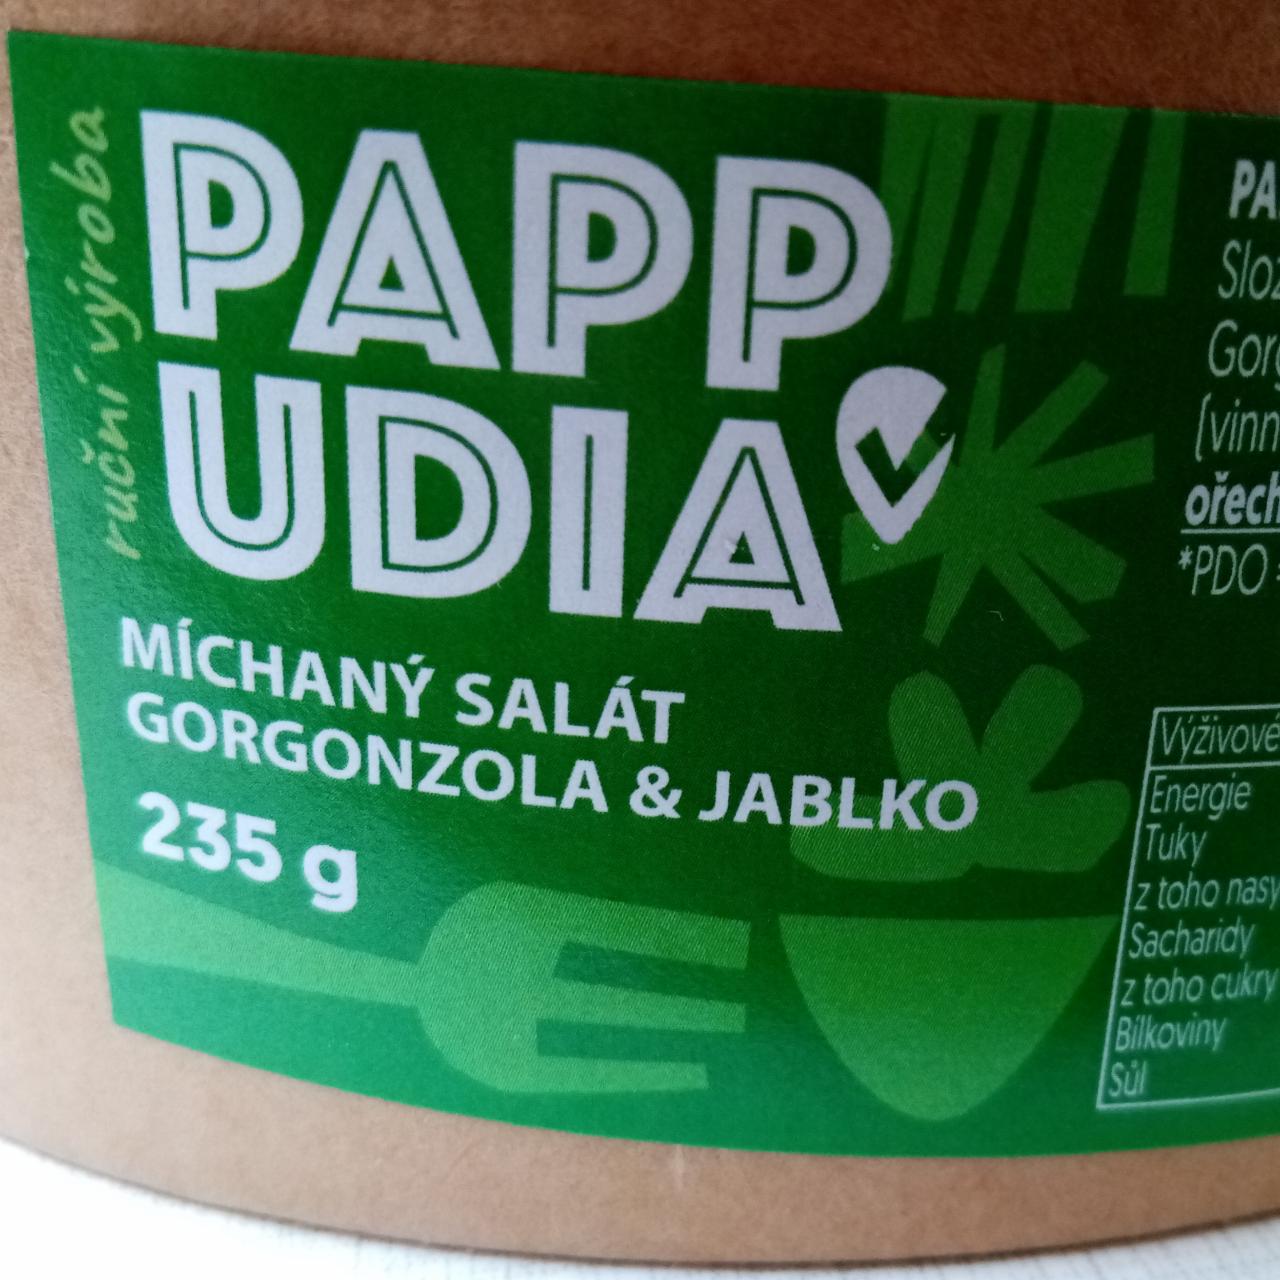 Fotografie - Míchaný salát gorgonzola & jablko Pappudia